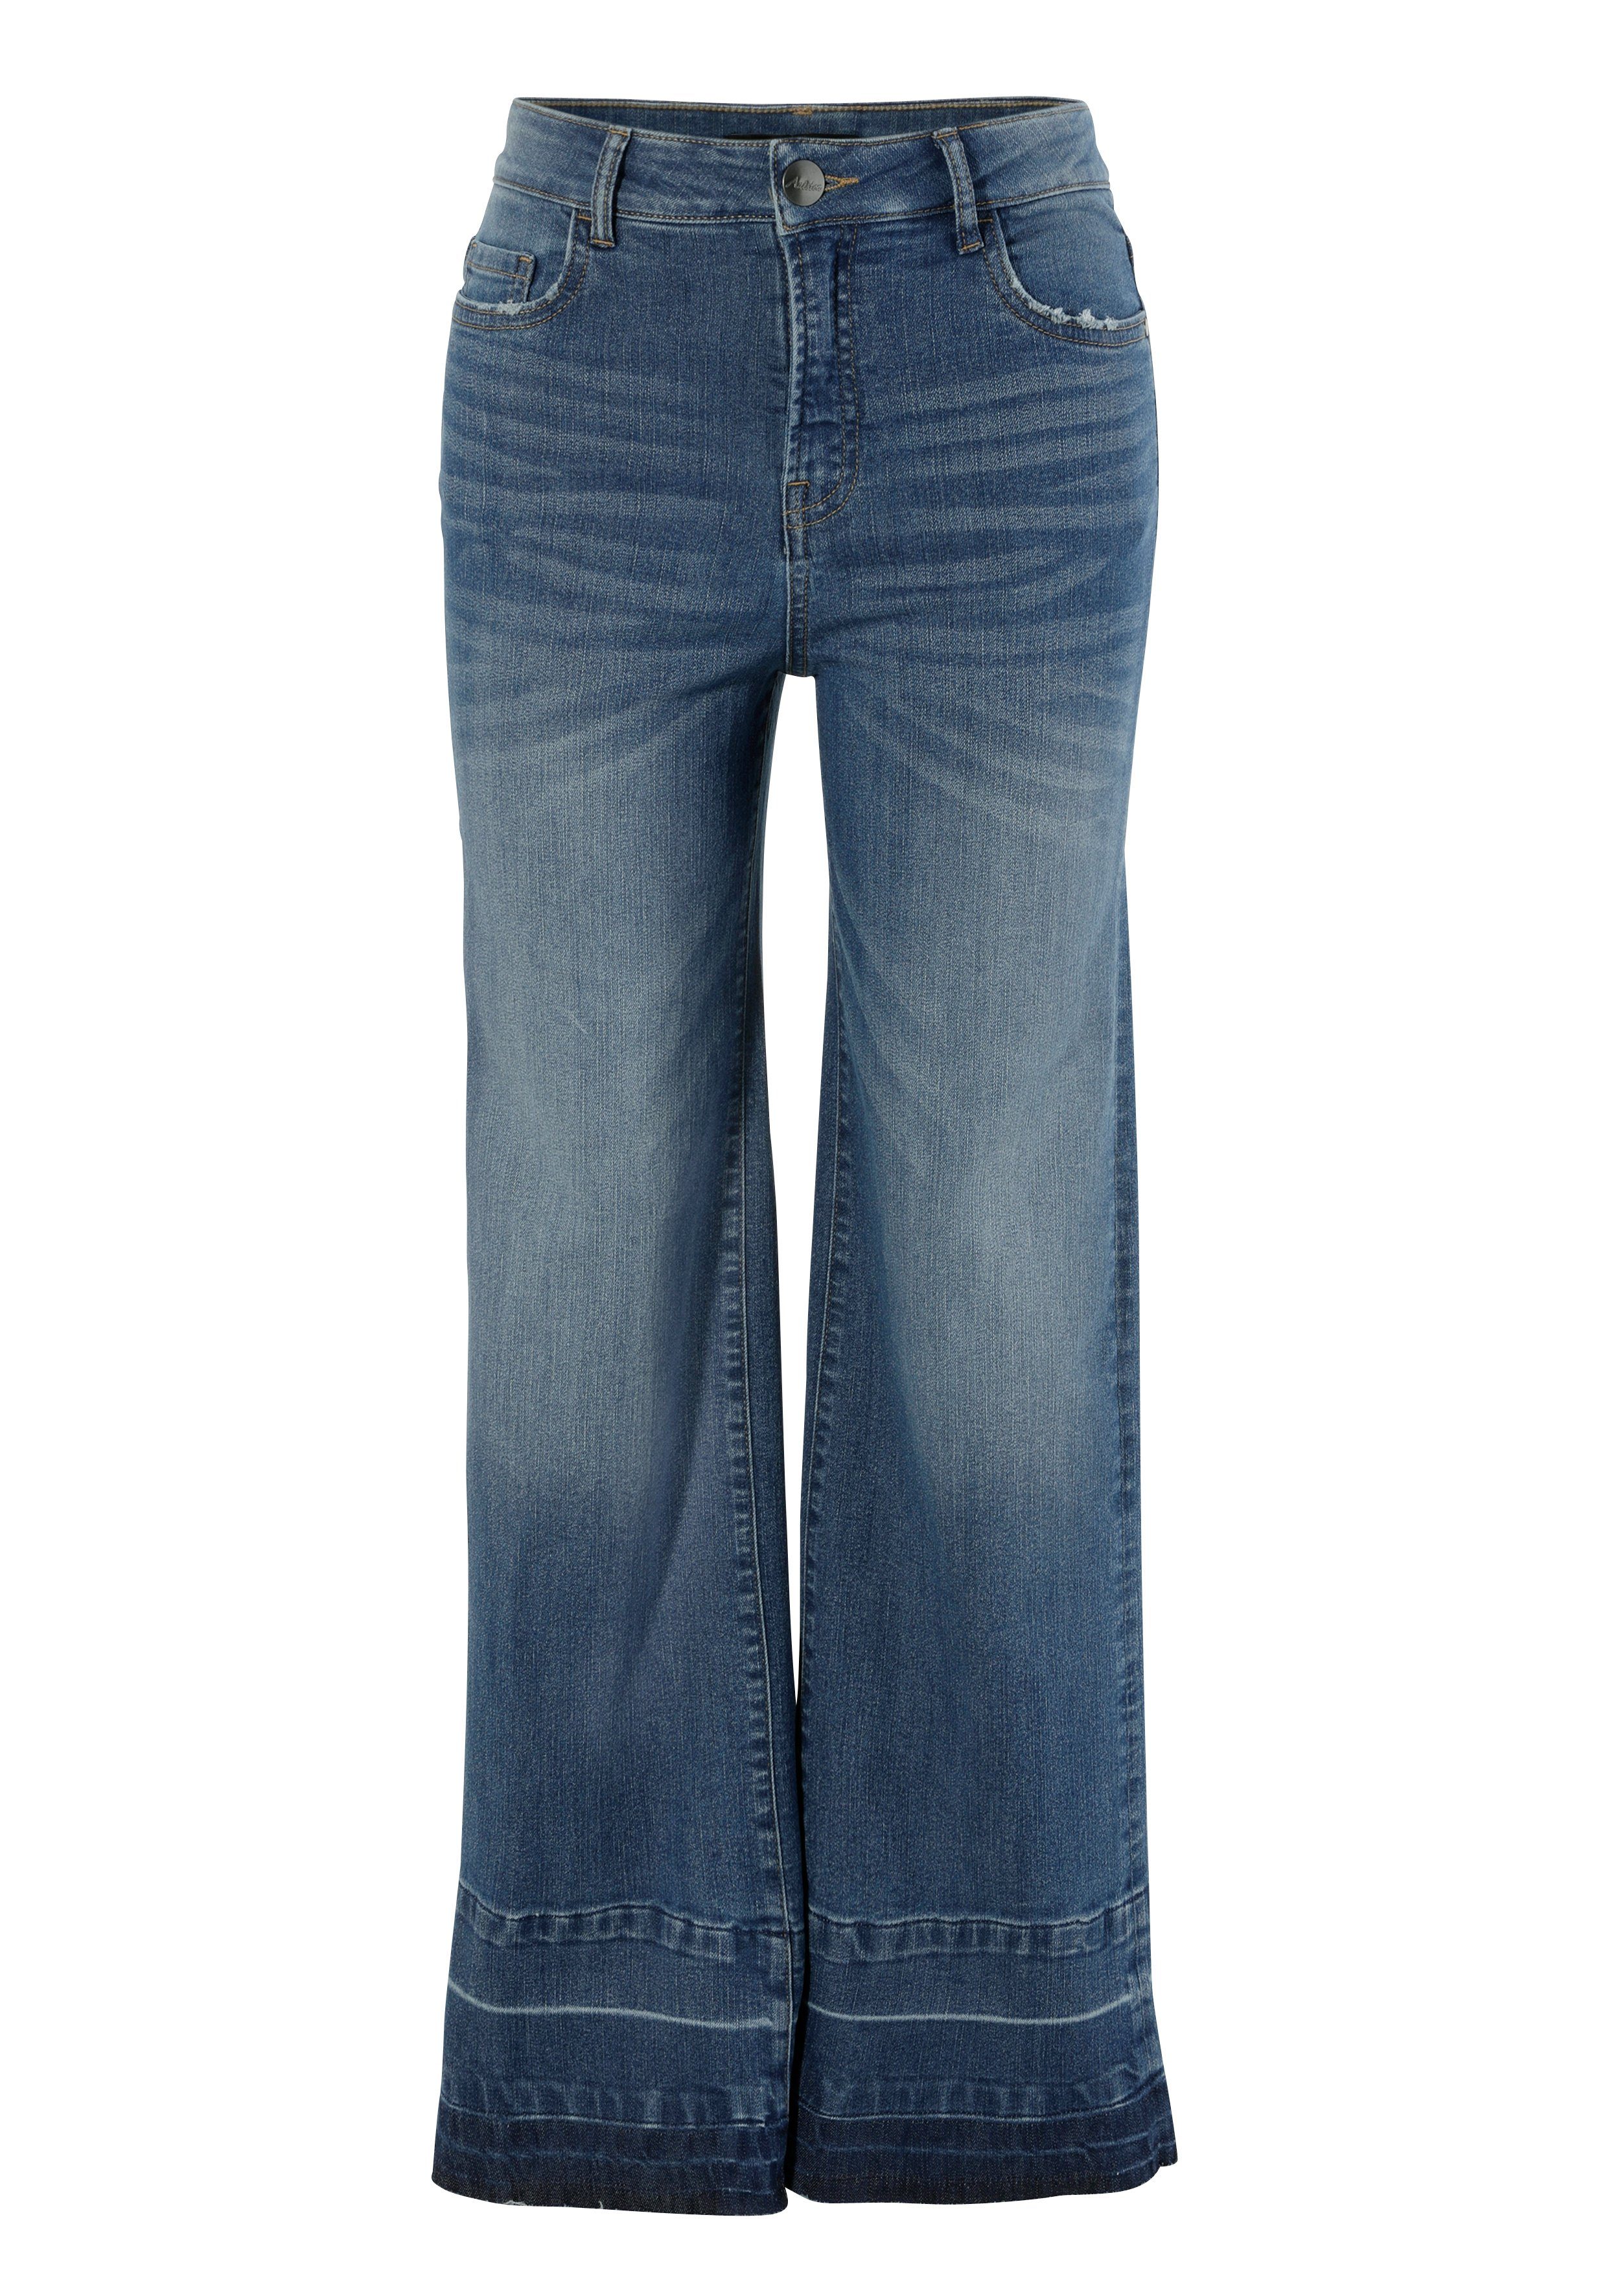 Aniston CASUAL Straight-Jeans mit trendiger dark am Saum Waschung blue used ausgefranstem leicht